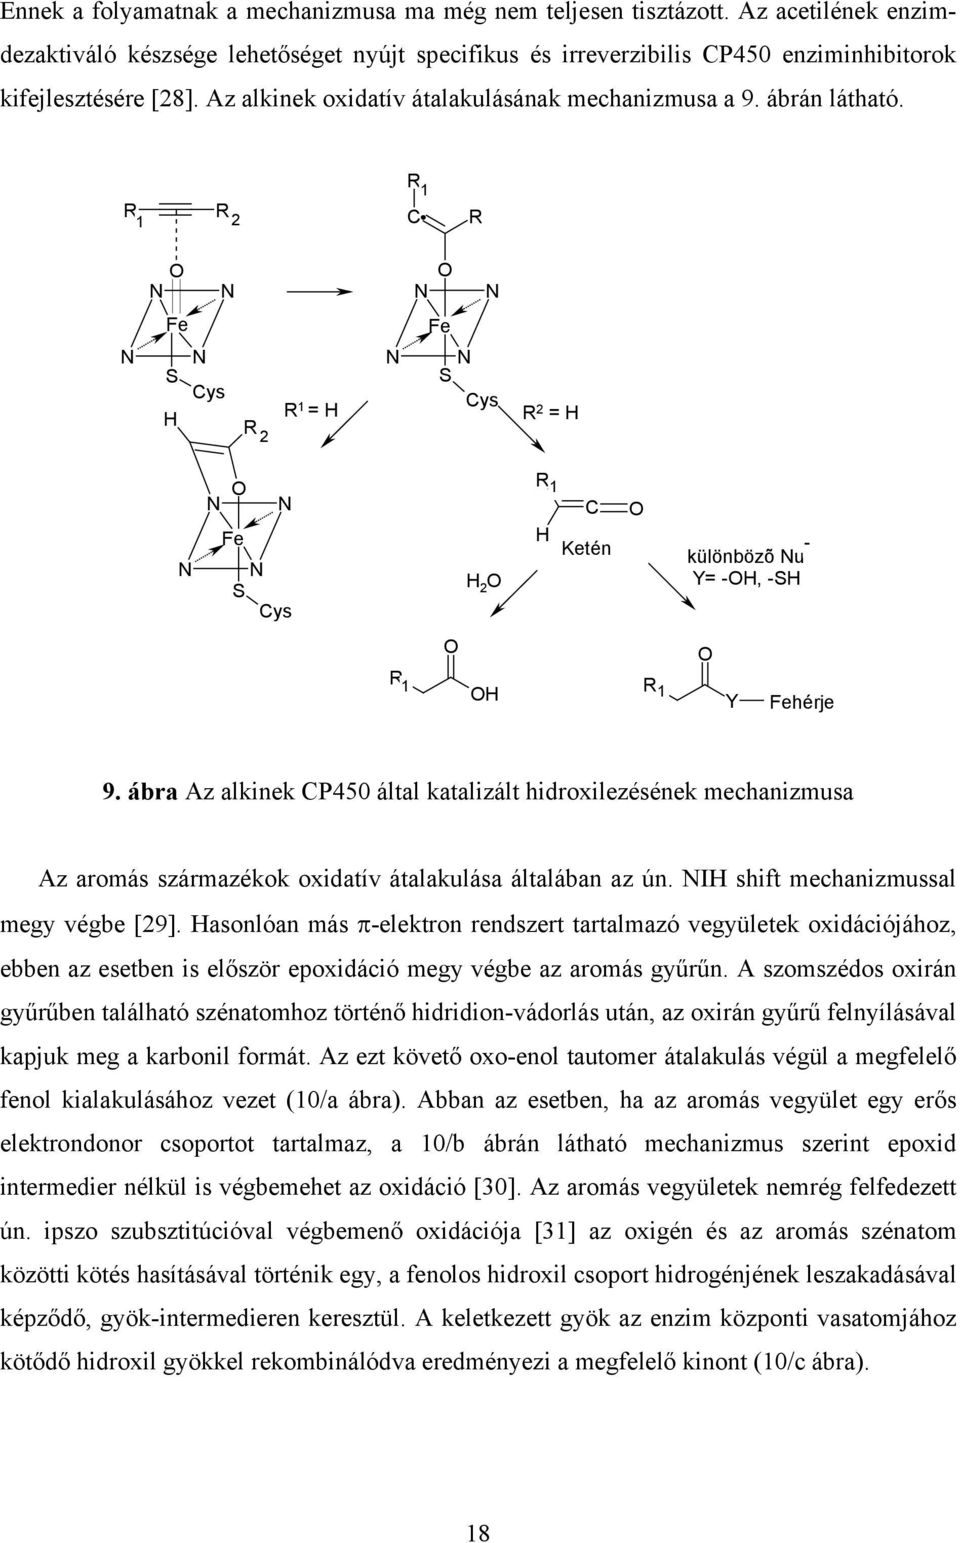 ábra Az alkinek CP450 által katalizált hidroxilezésének mechanizmusa Az aromás származékok oxidatív átalakulása általában az ún. I shift mechanizmussal megy végbe [29].